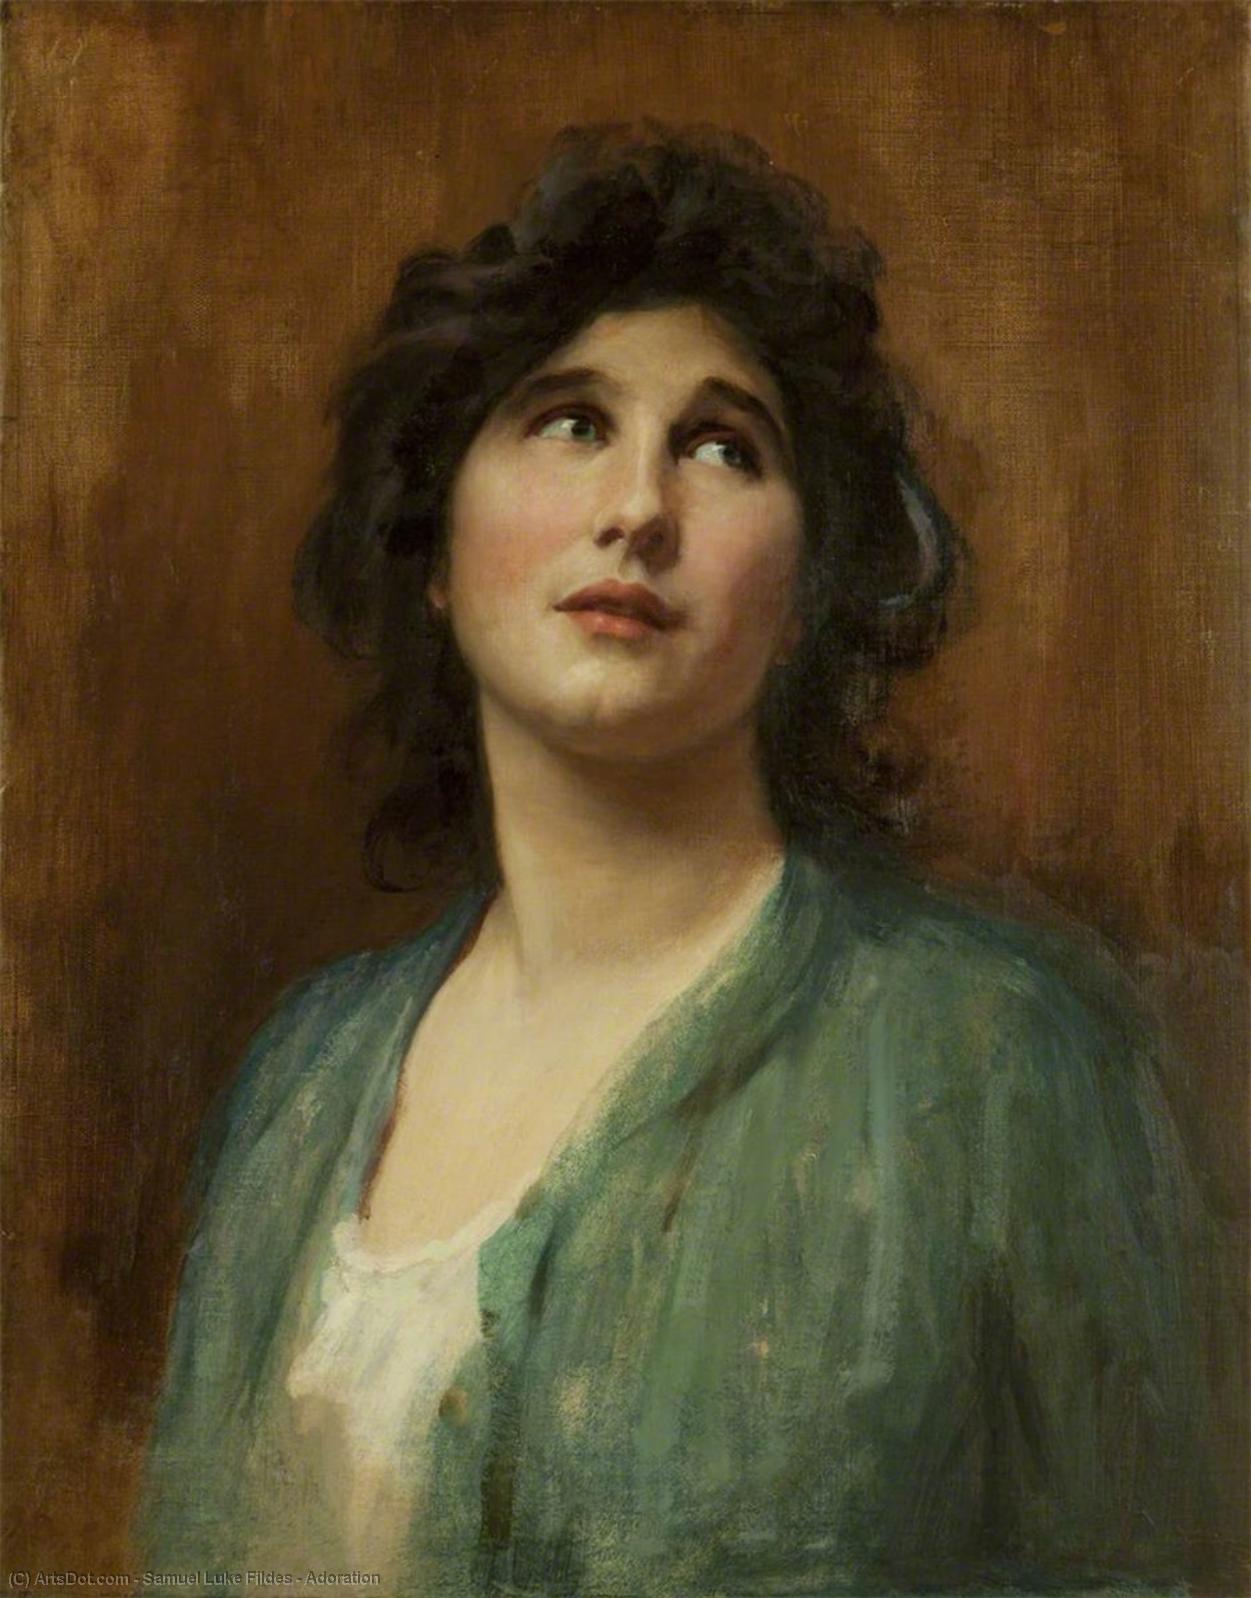 WikiOO.org - Enciclopédia das Belas Artes - Pintura, Arte por Samuel Luke Fildes - Adoration